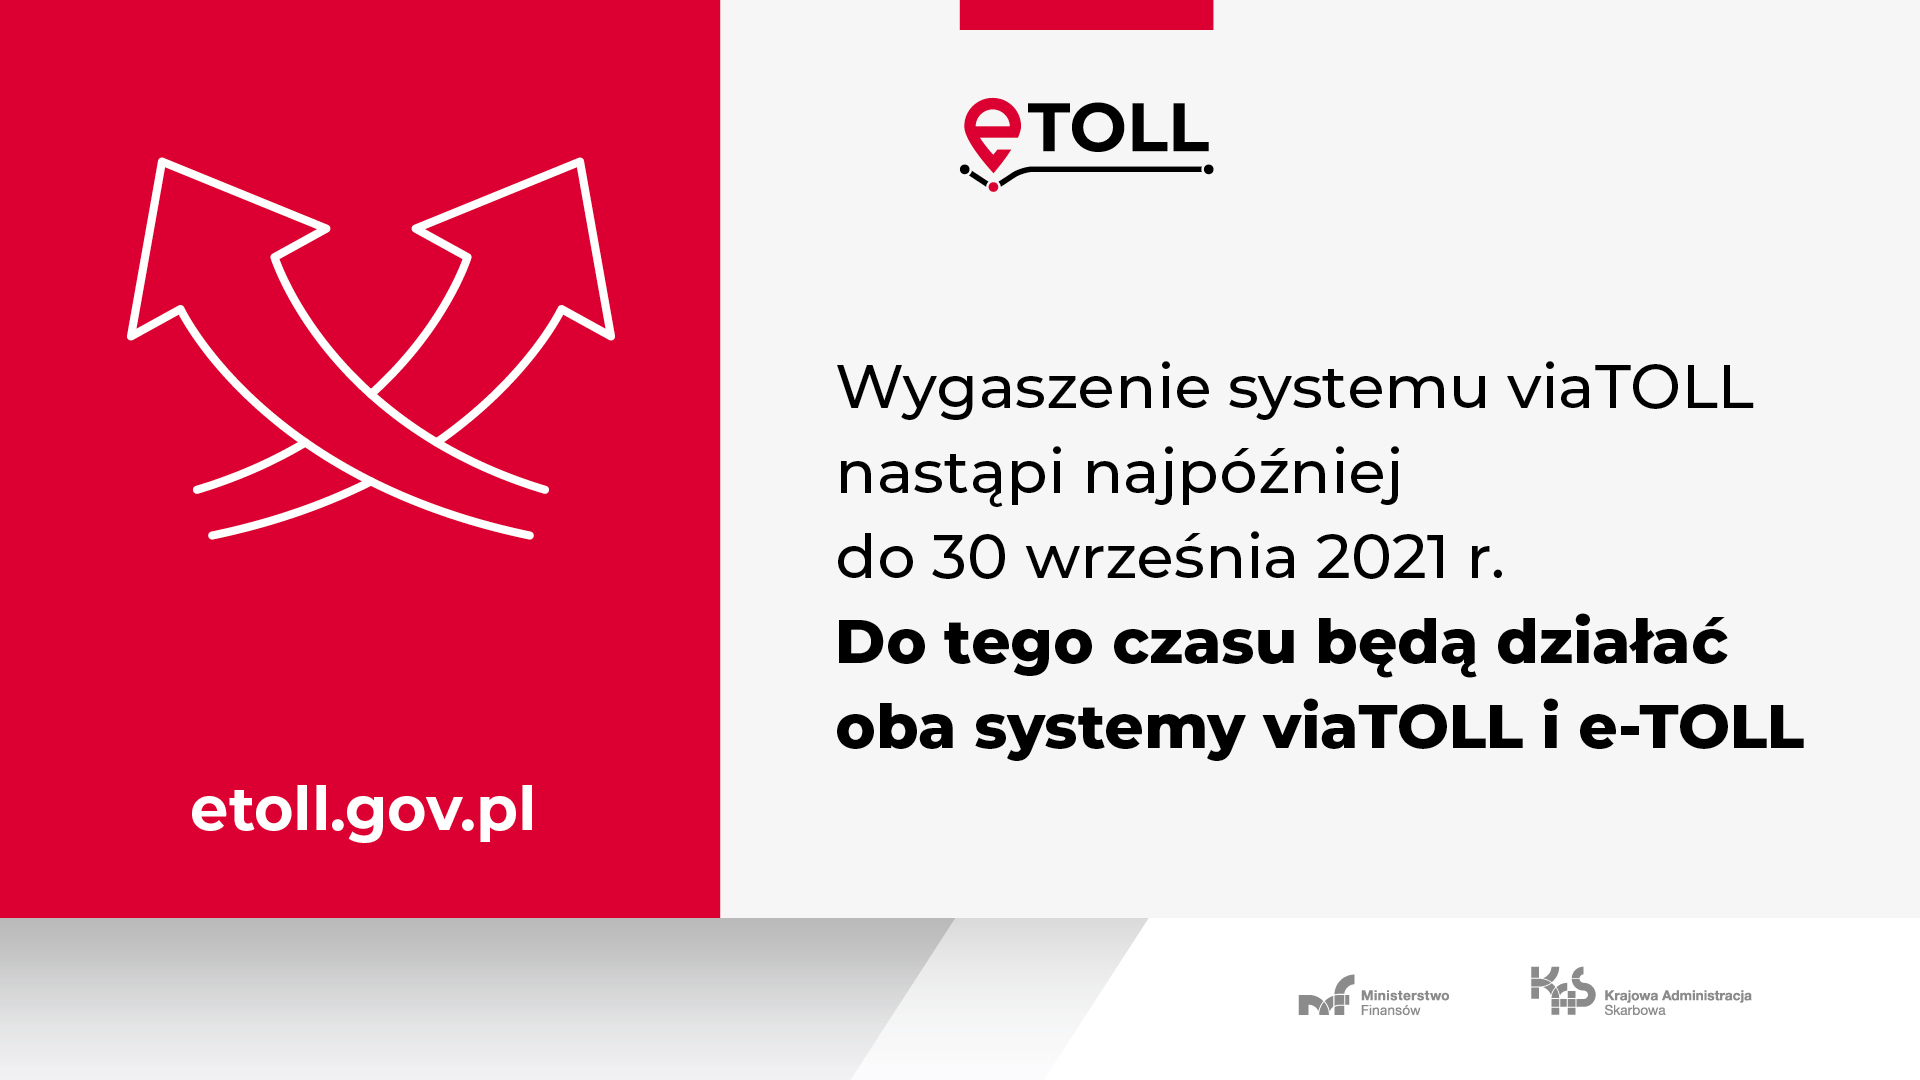 Informacja o tym, że system viaTOOL zostanie wygaszony najpóźniej 30 września 2021